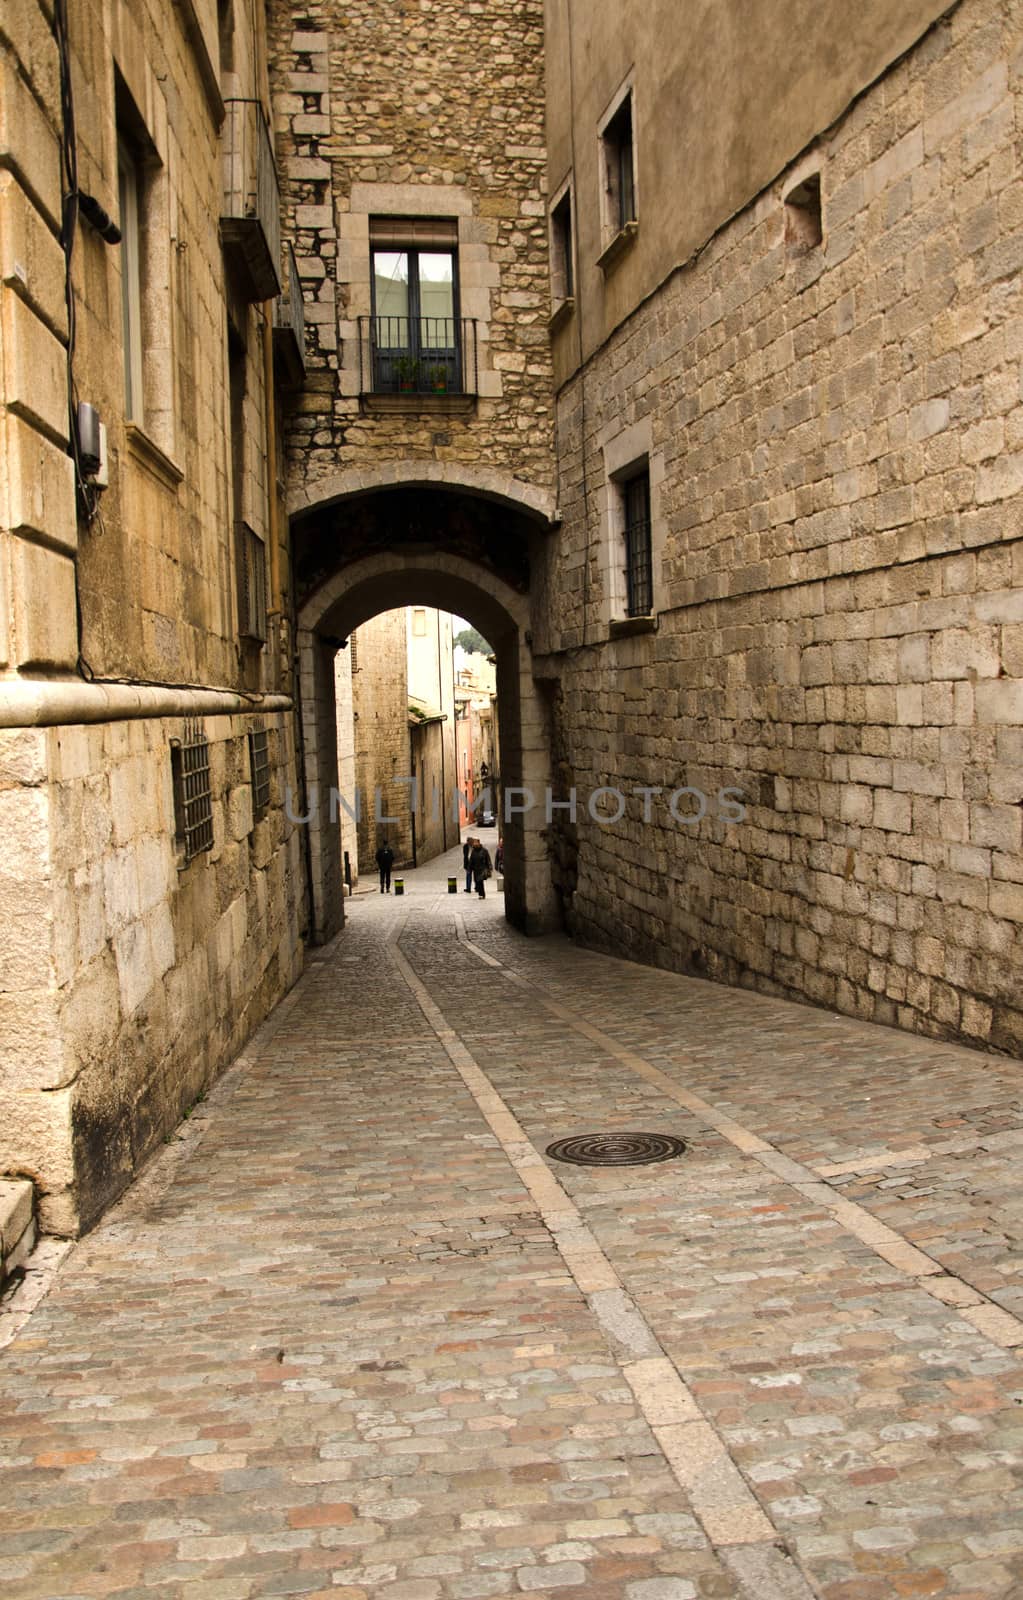 Street of gerona, Spain. by lauria